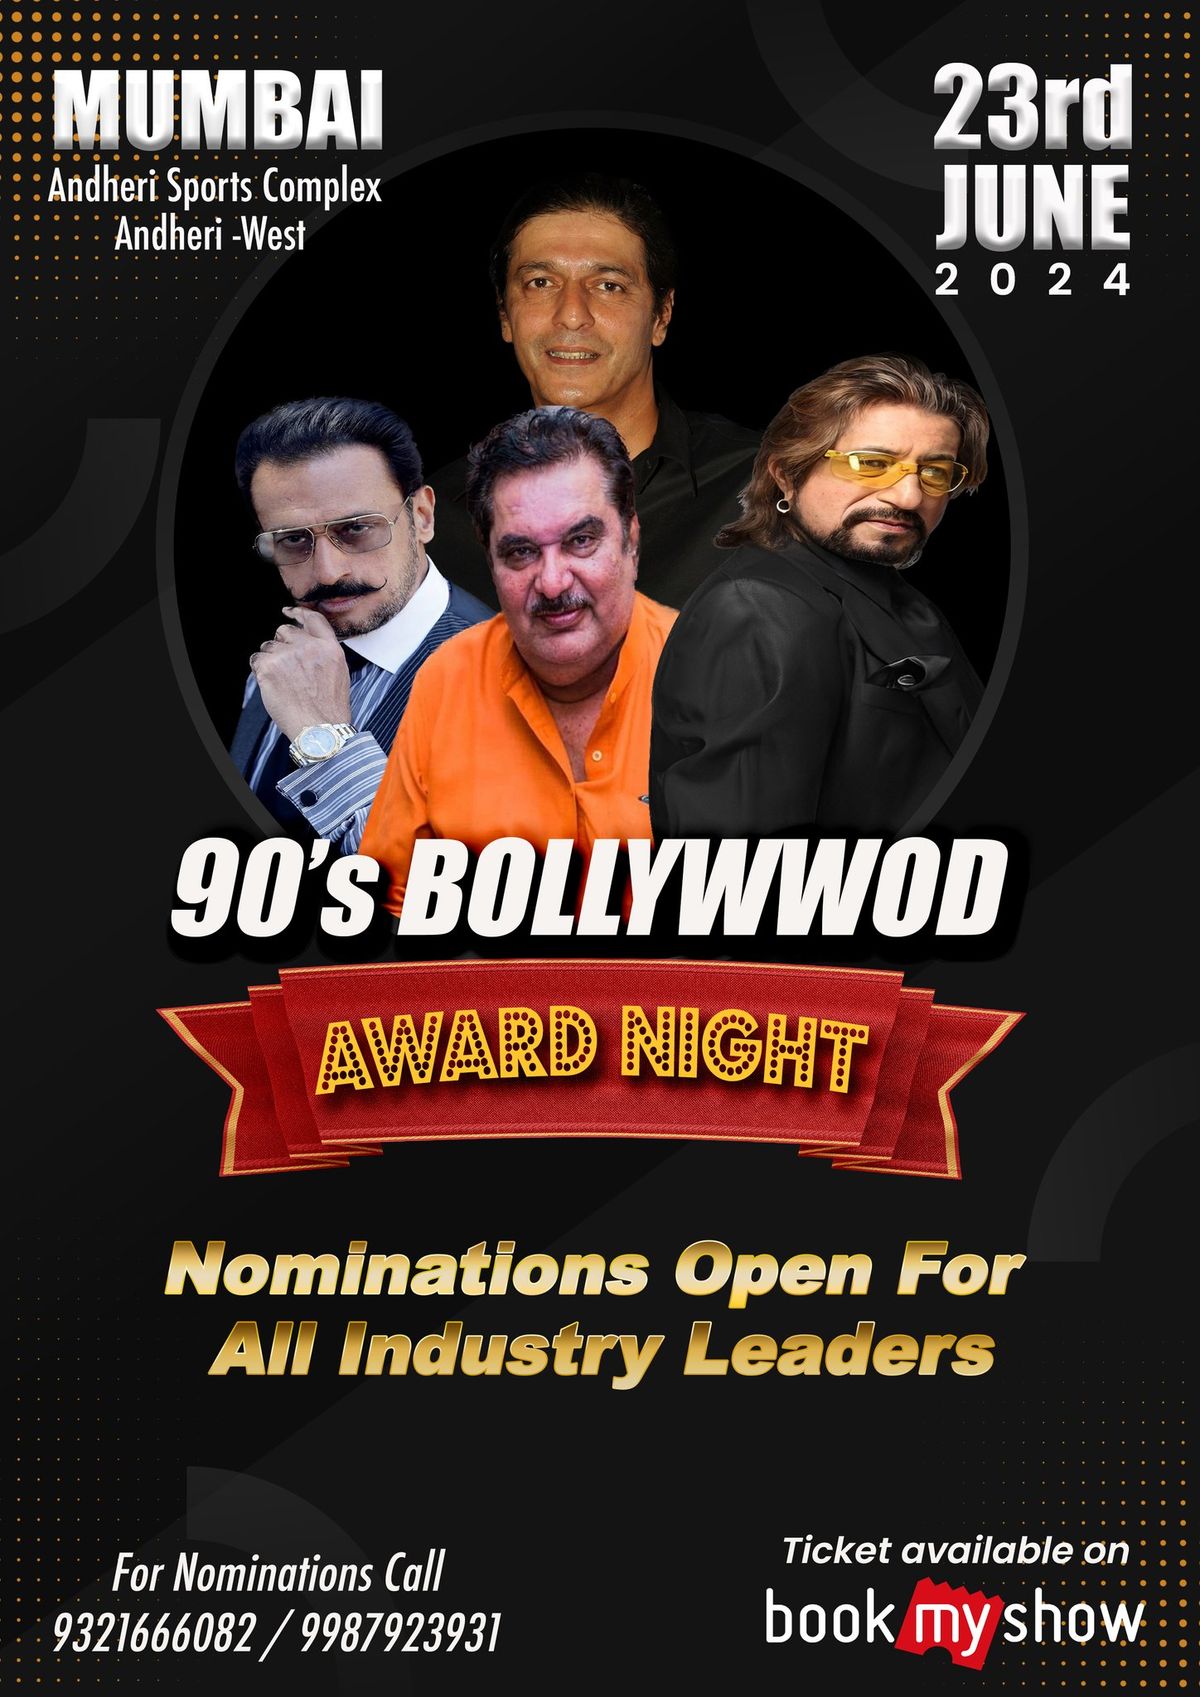 90's Bollywood Award Night